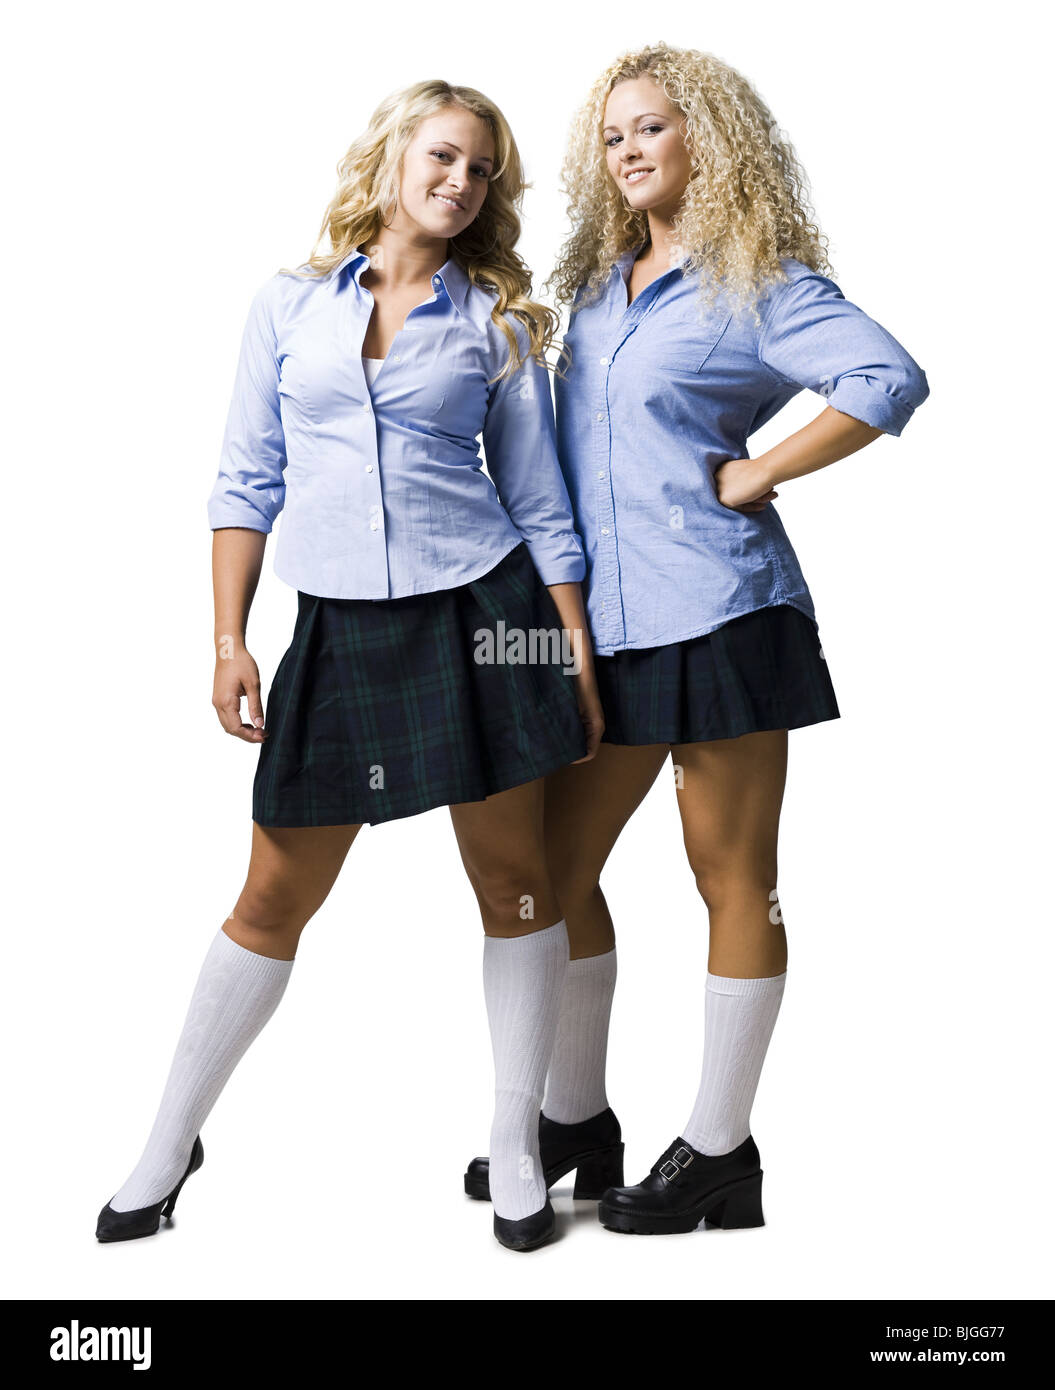 Girls In Schoolgirl Outfits